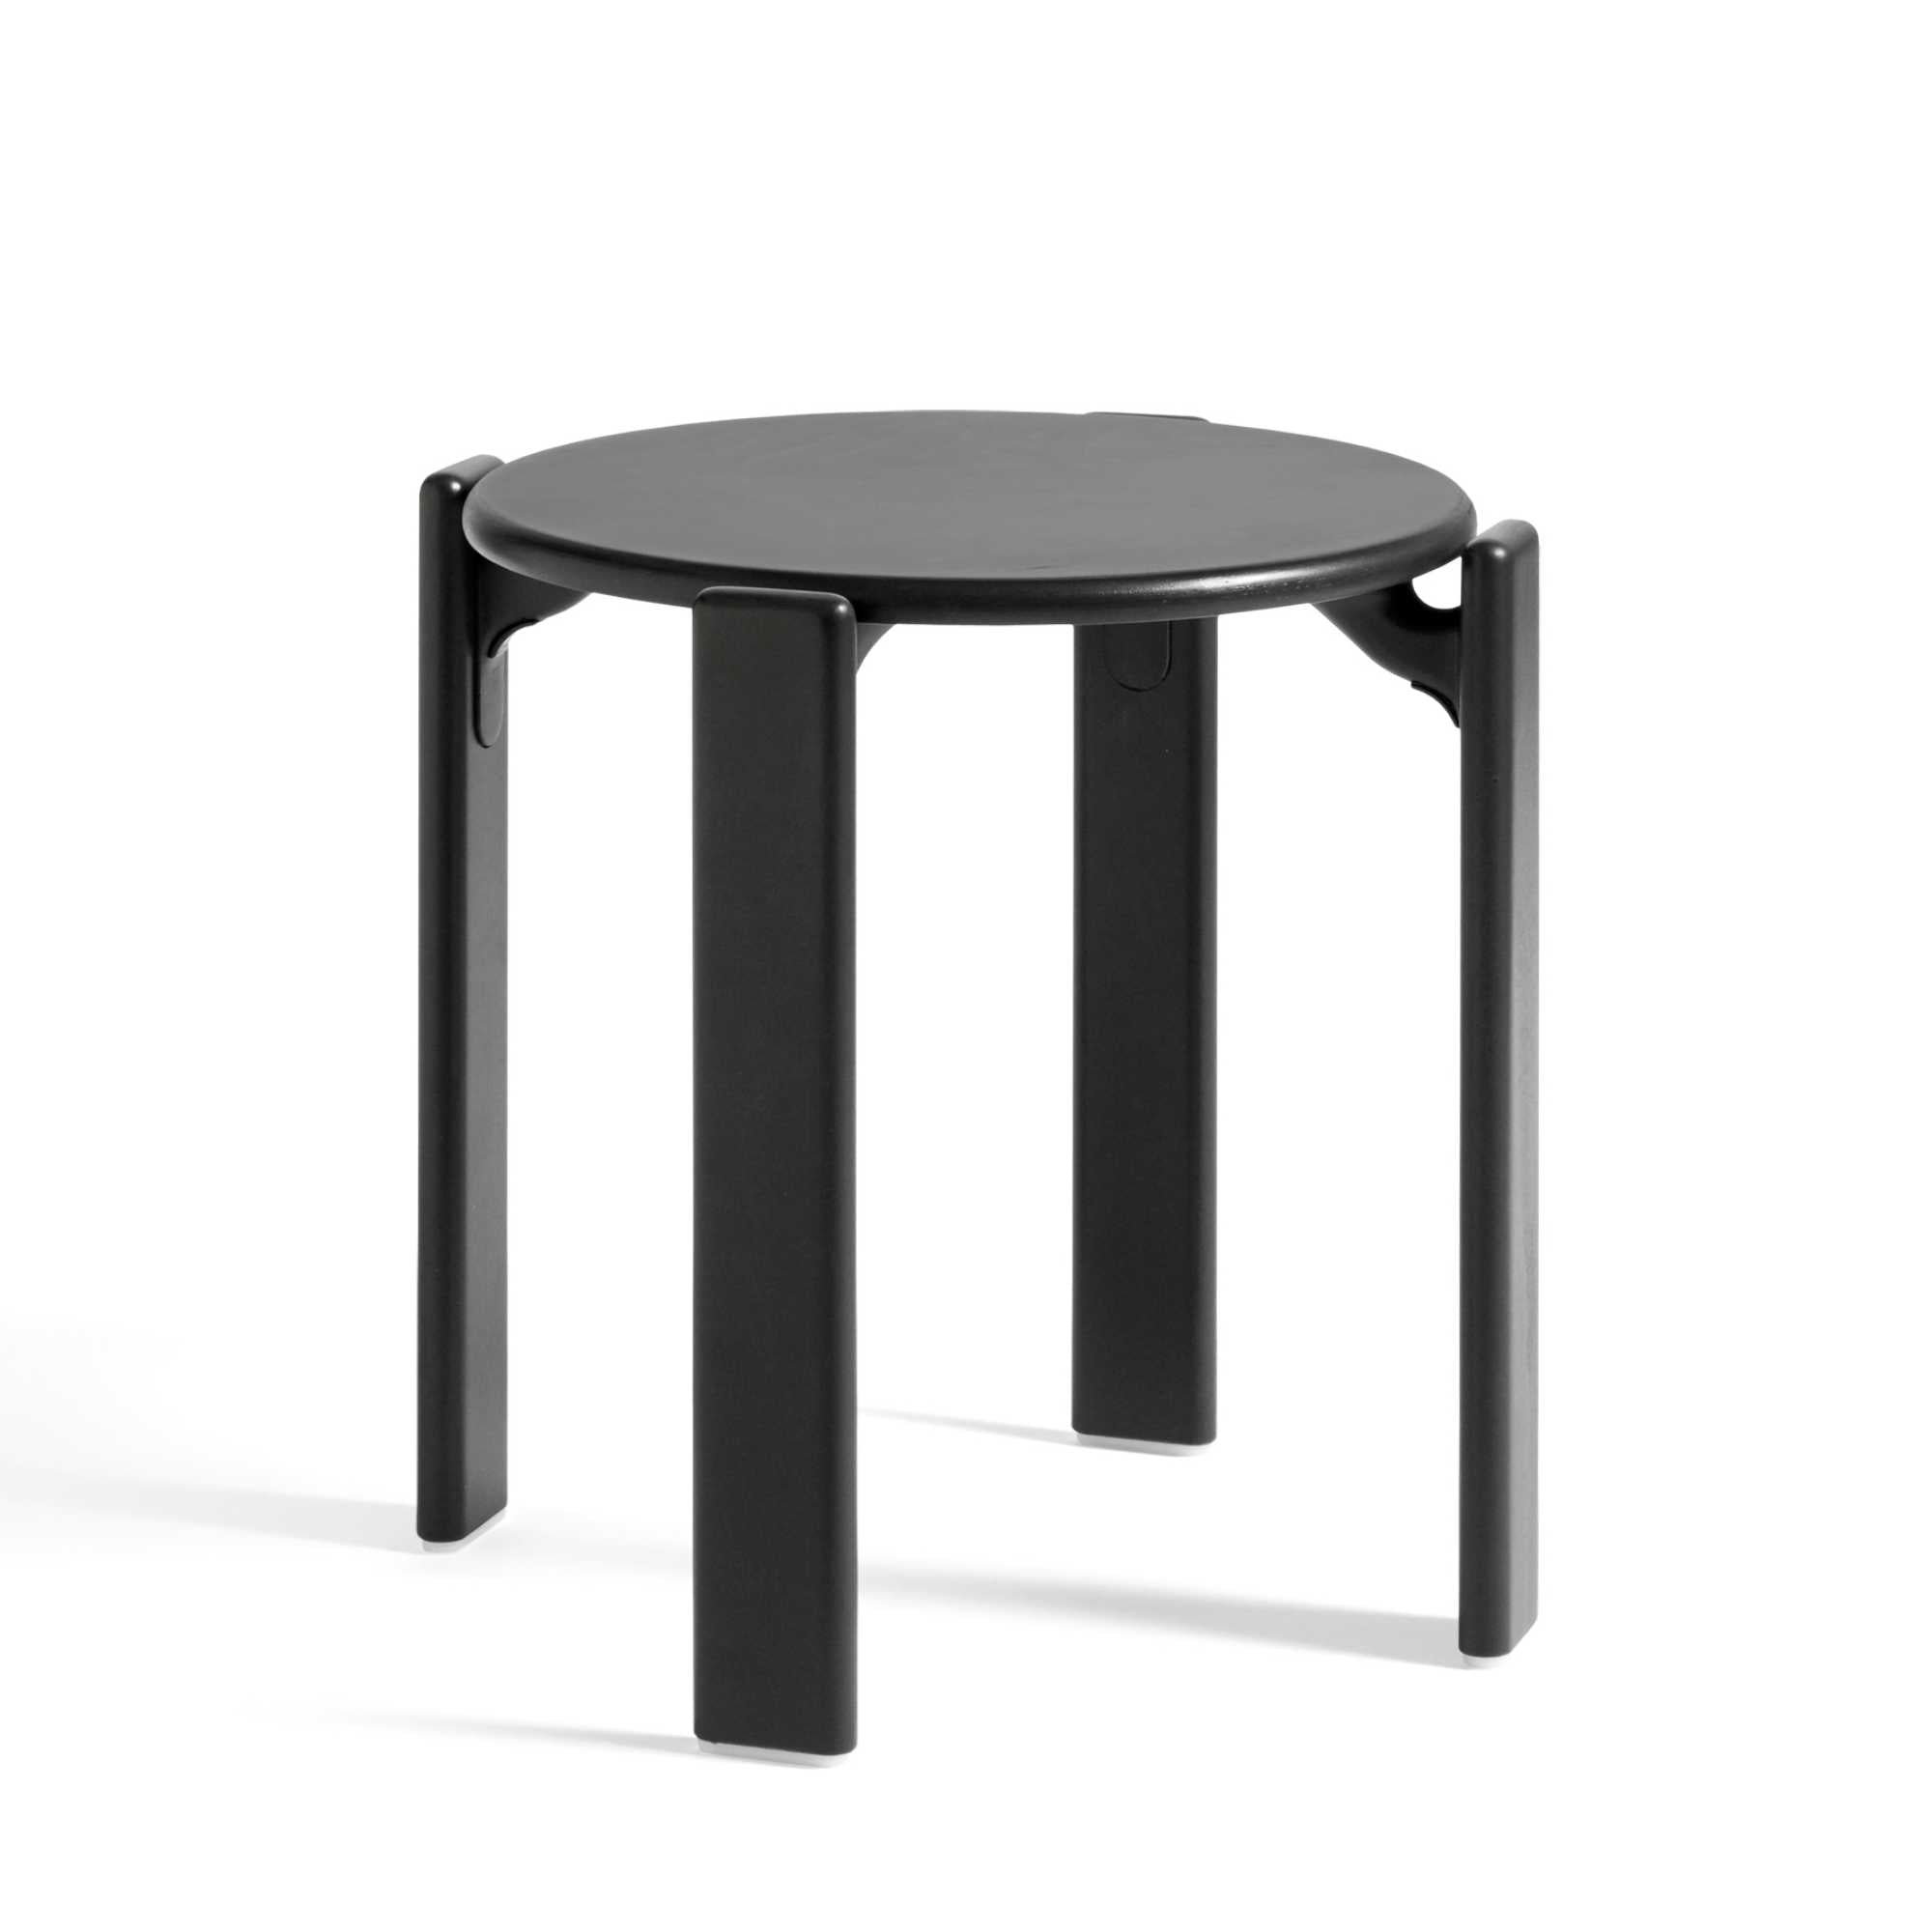 Hay Rey stool, deep black